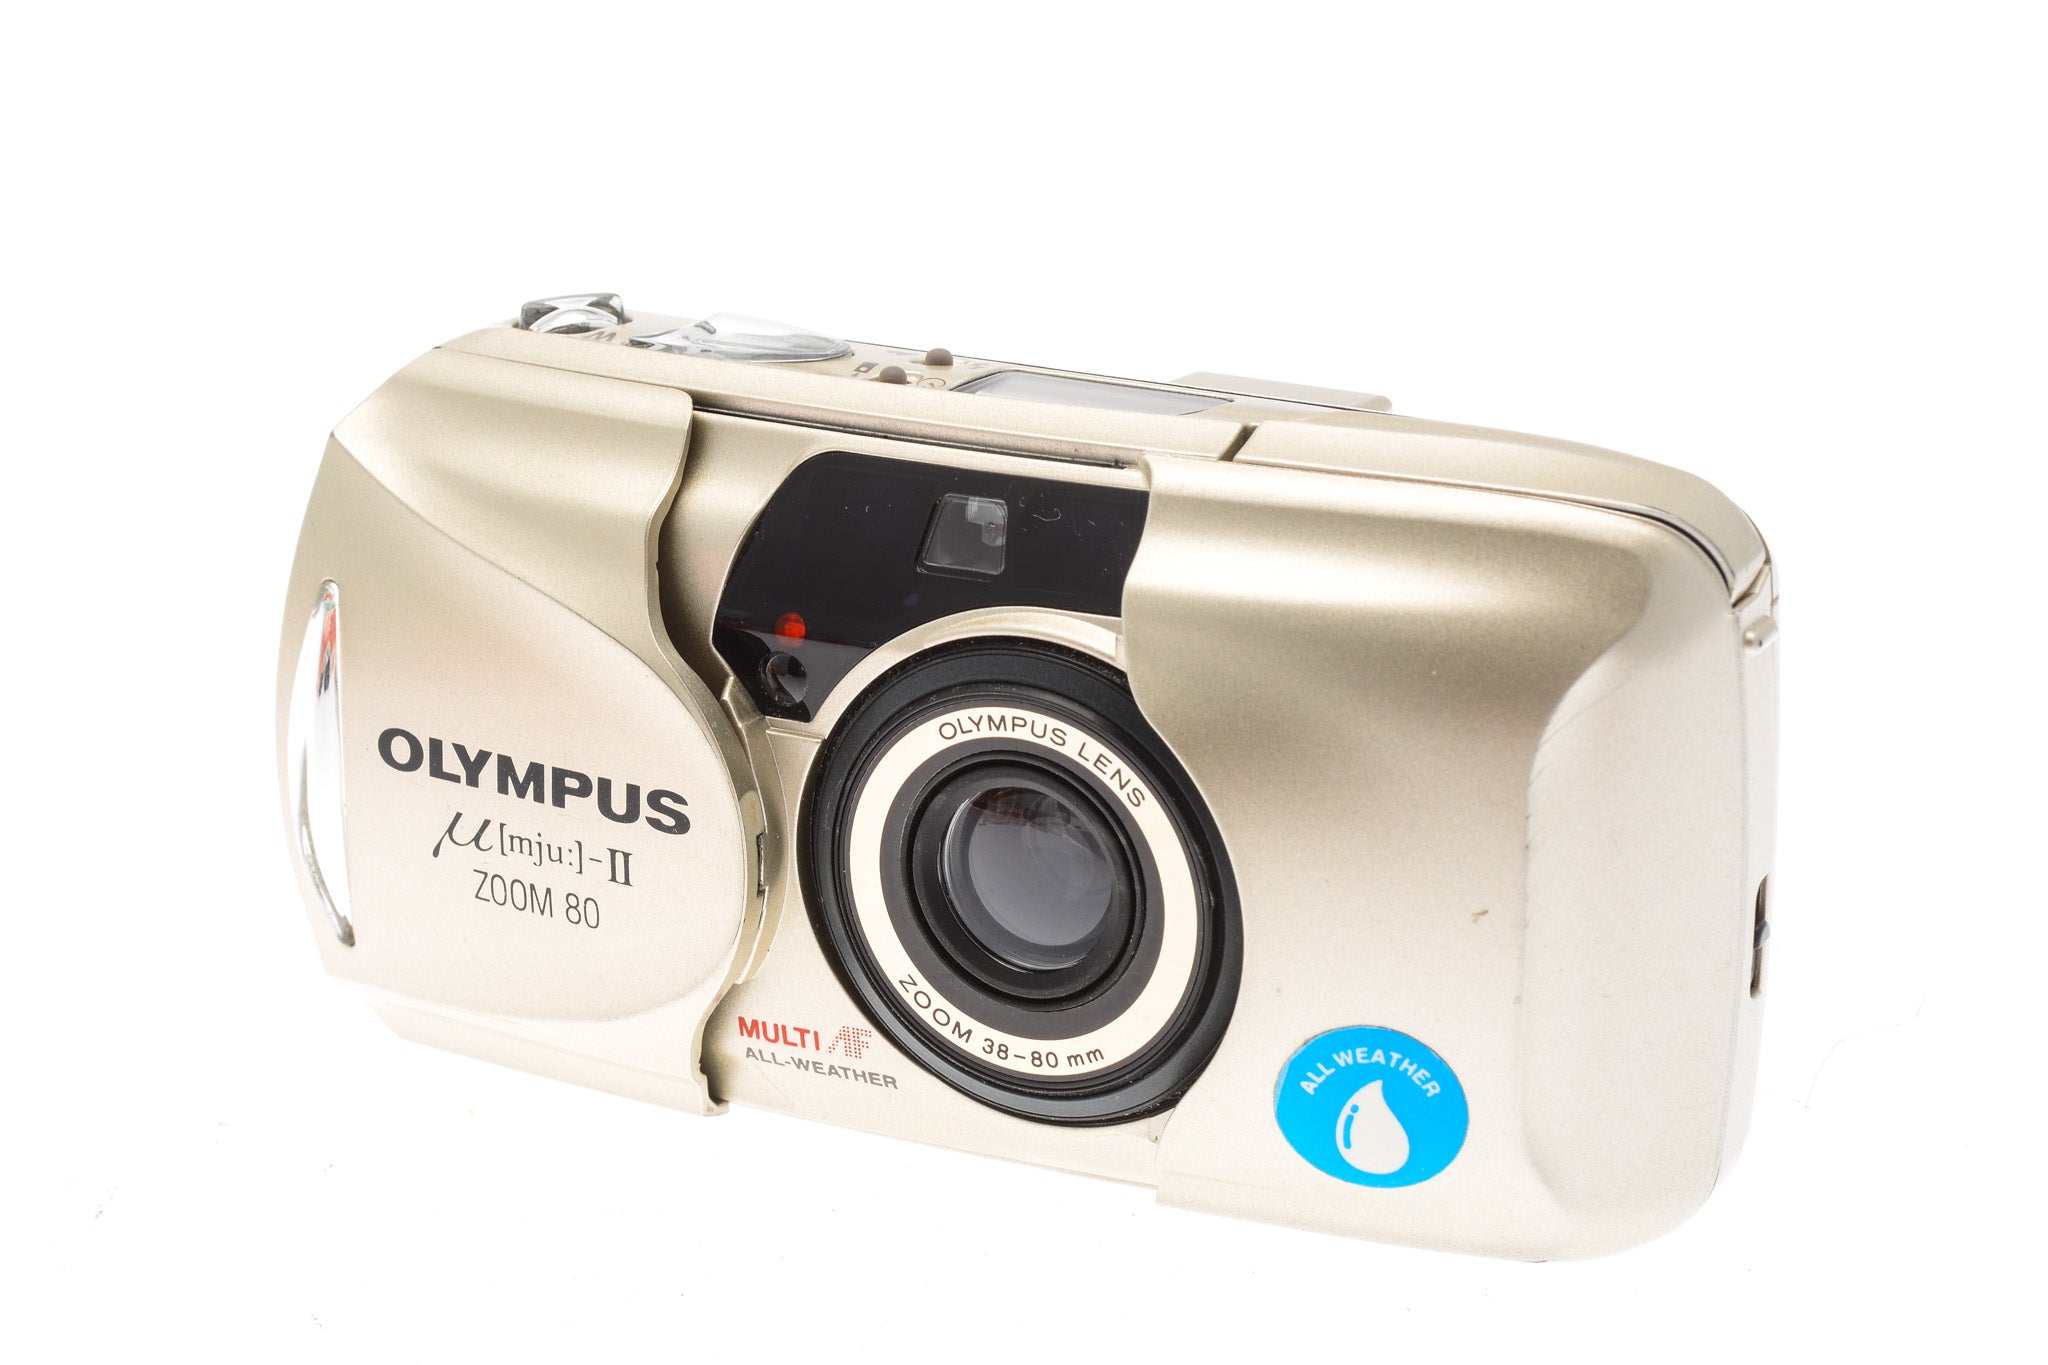 lamp gelei verbannen Olympus mju-II Zoom 80 Panorama - Camera – Kamerastore